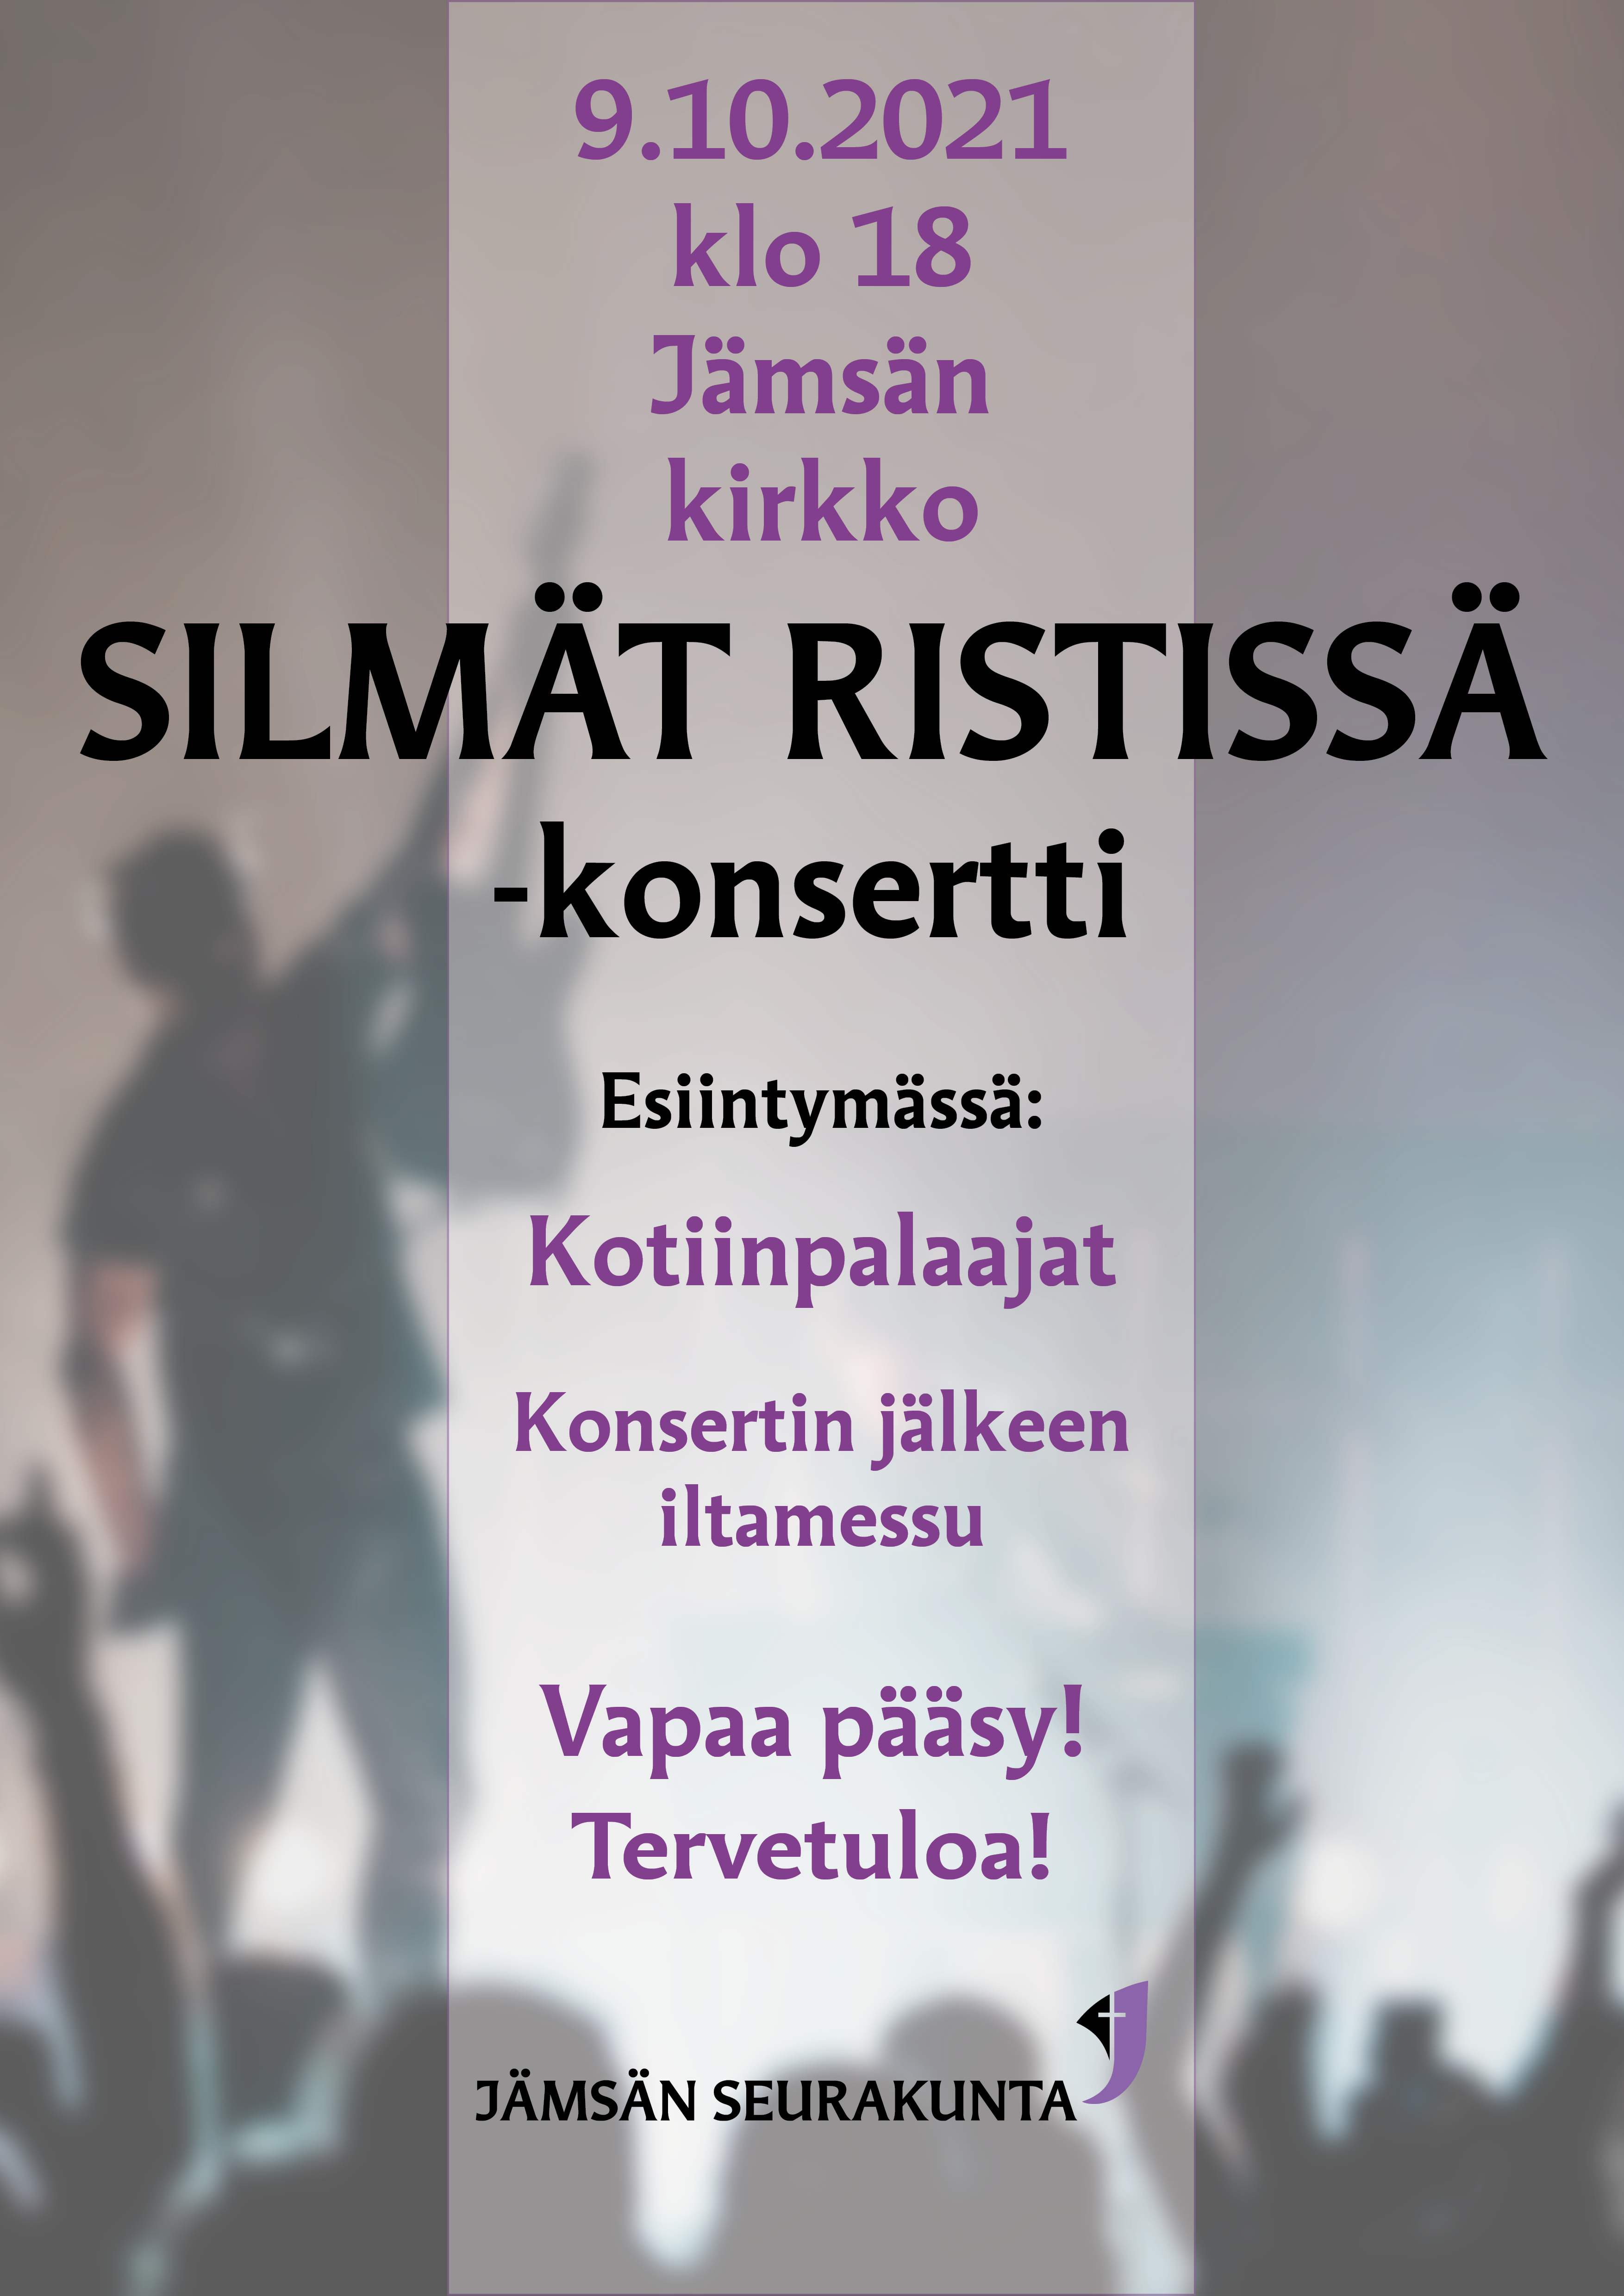 Juliste silmä ristissä tapahtuma 9.10.2021 klo 18 Jämsän kirkko